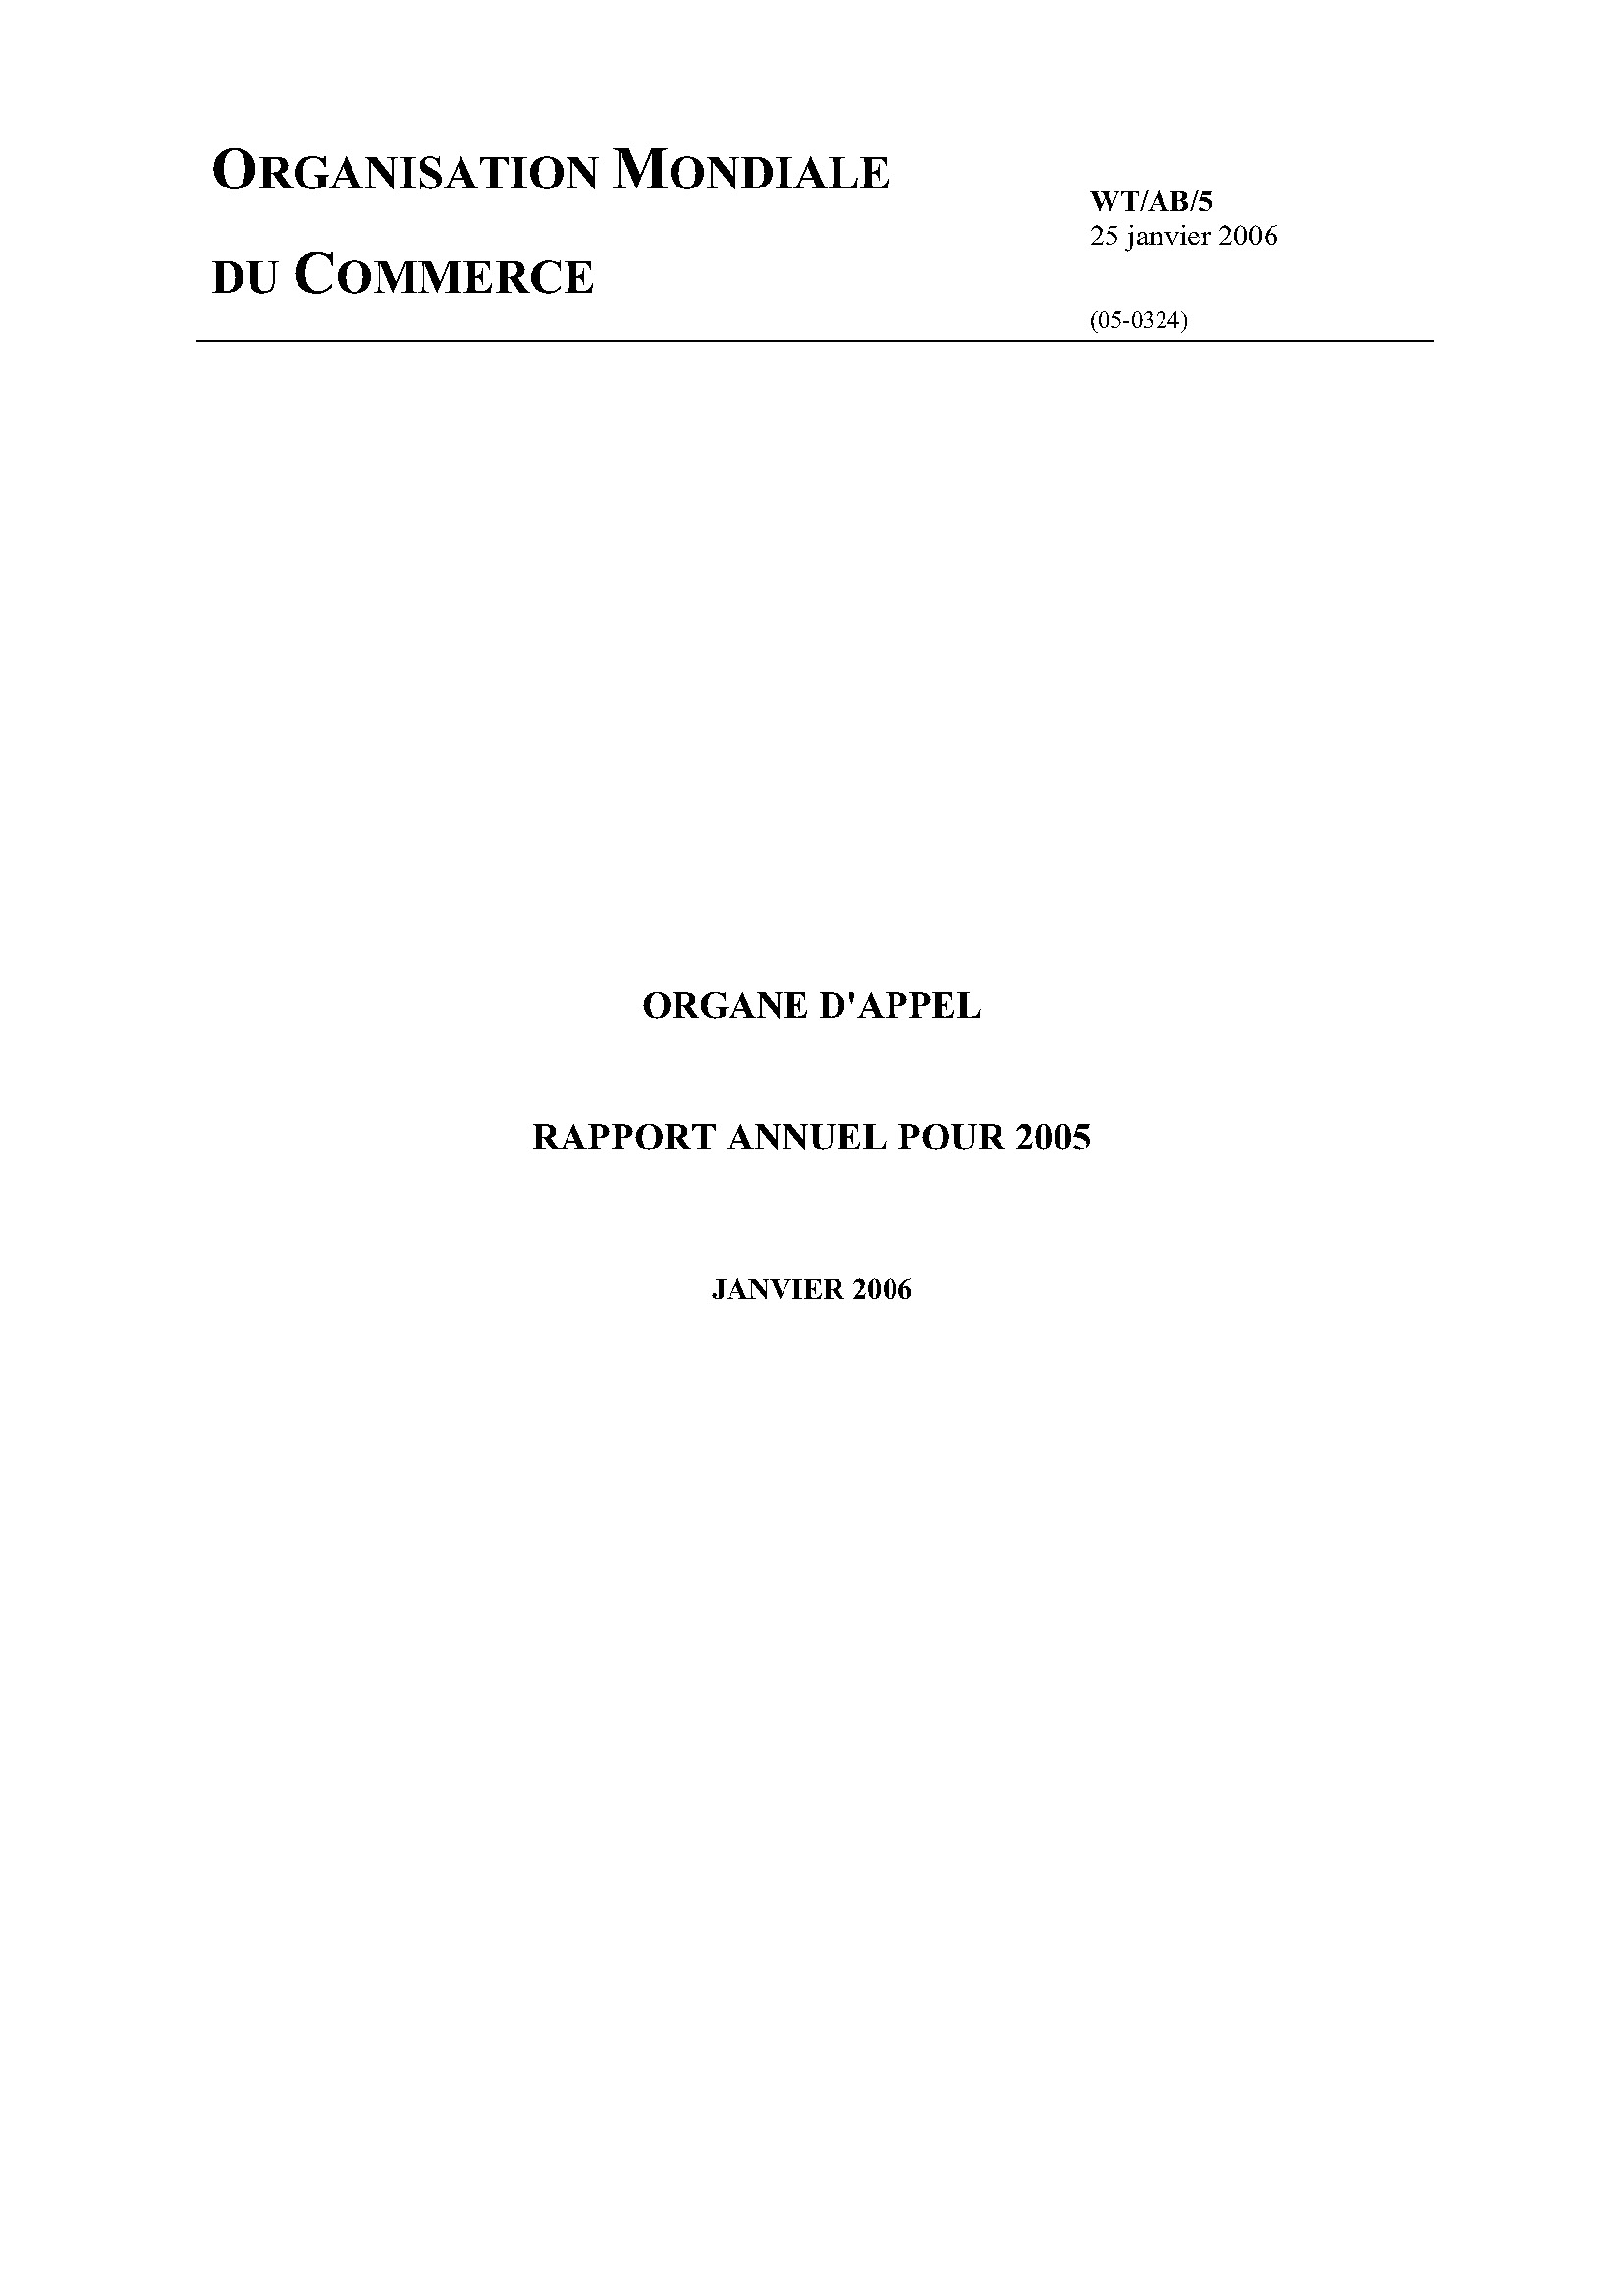 image of Rapport annuel de l’organe d’appel pour 2005 